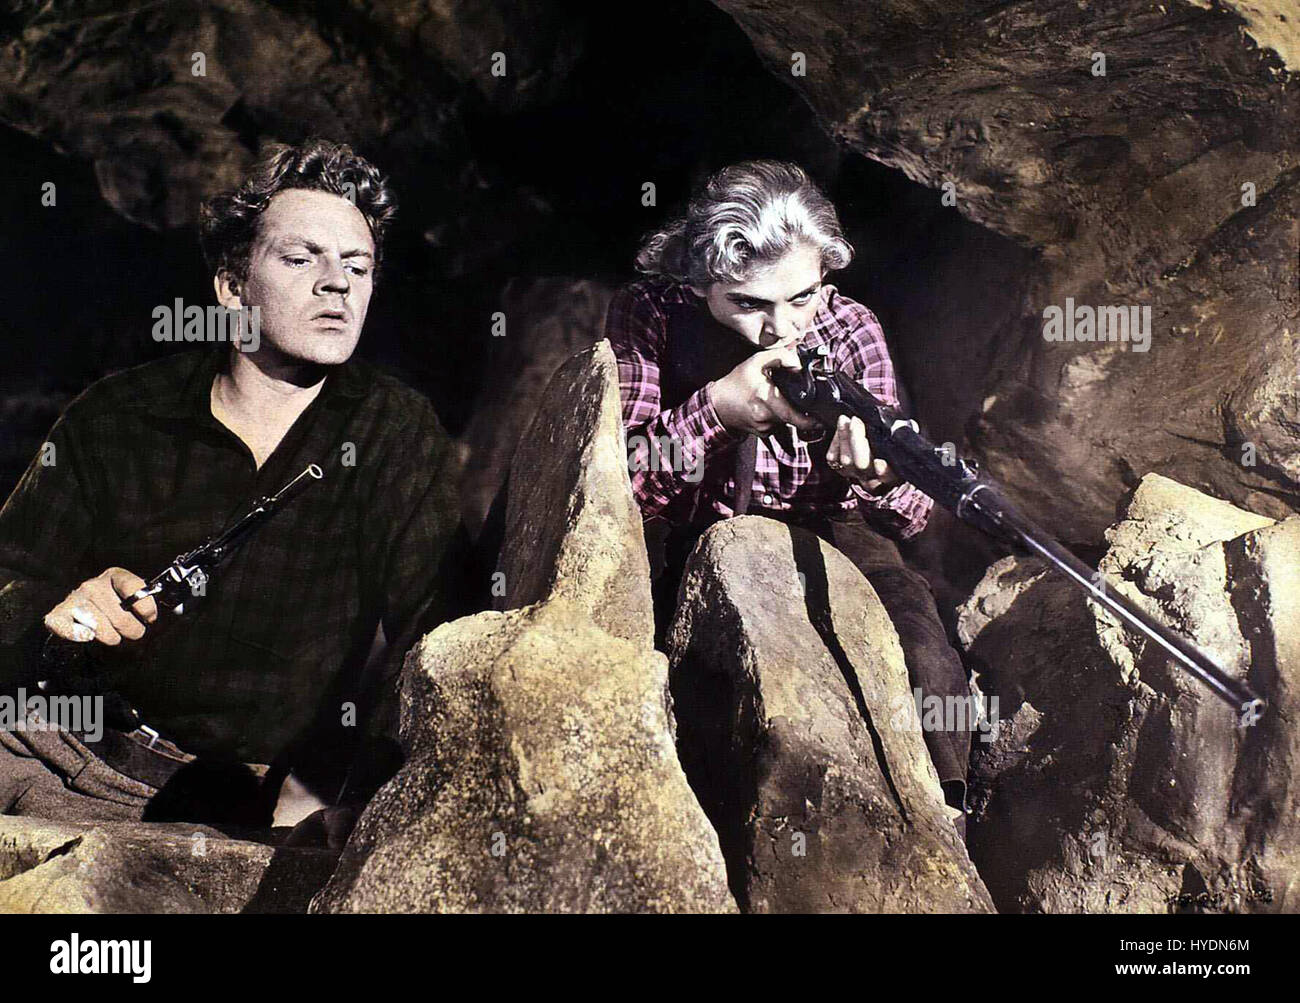 Die Hölle der roten Berge aka. Red Mountain, USA 1951 Regie: William Dieterle Actors/Stars: Alan Ladd, Lizabeth Scott, Arthur Kennedy Stock Photo